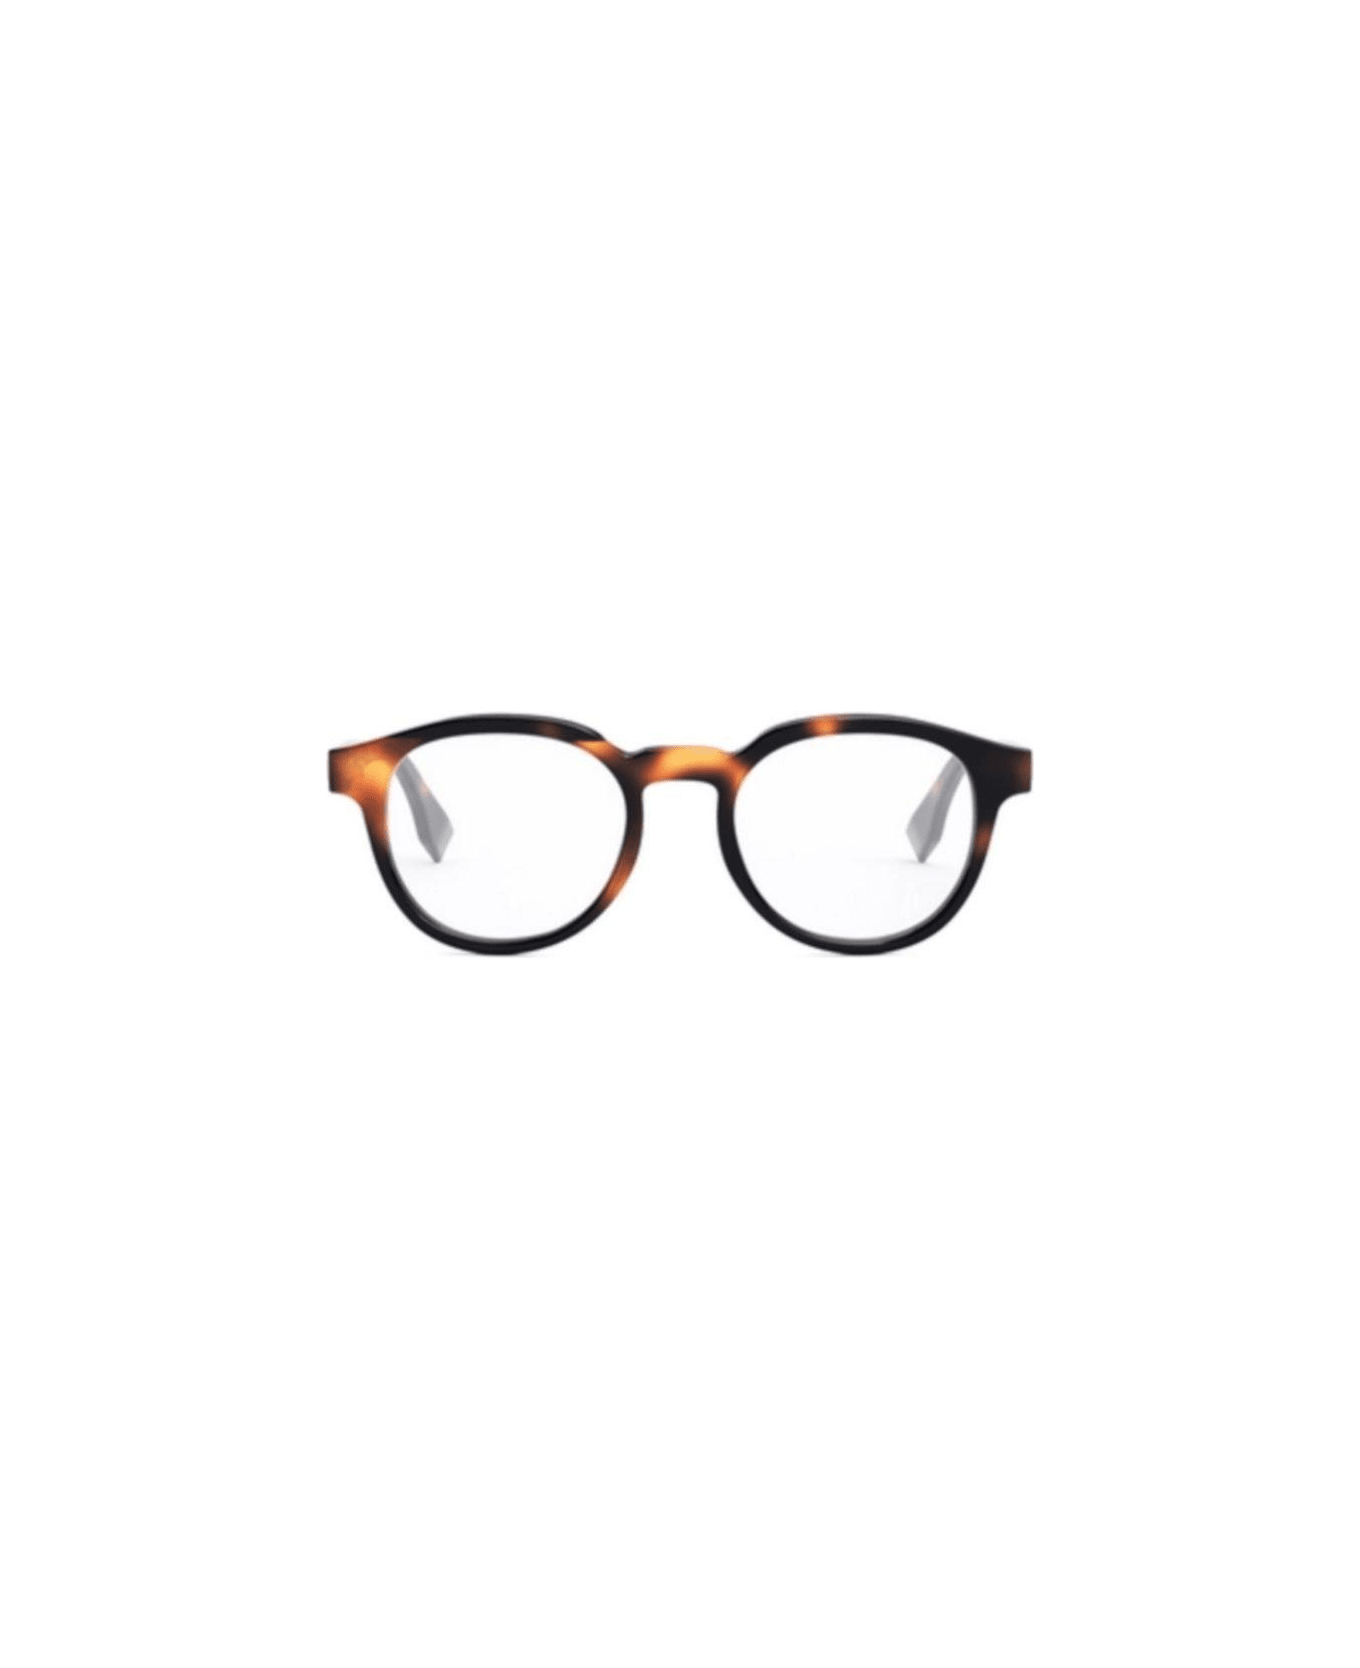 Fendi Eyewear Round Frame Glasses - 053 アイウェア